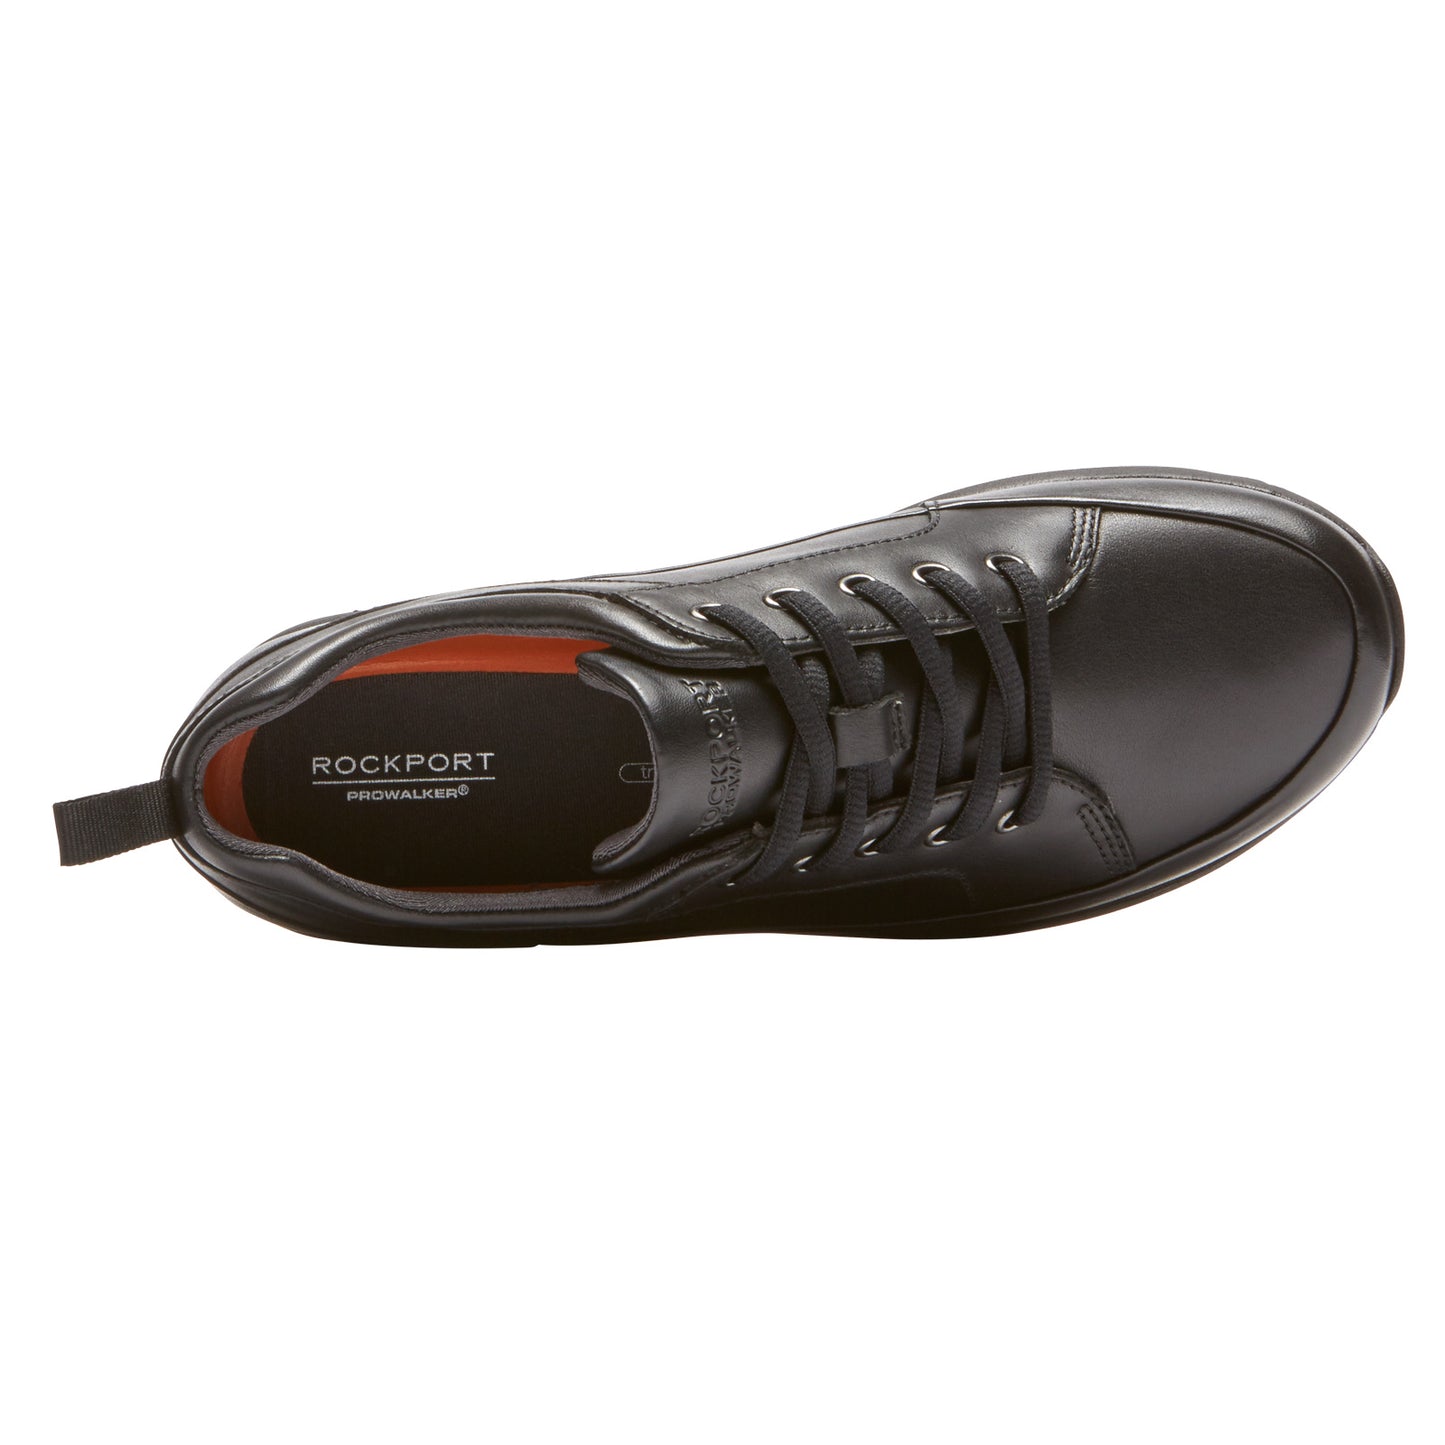 Peltz Shoes  Women's Rockport Prowalker Waterproof Walking Shoe BLACK CG8777